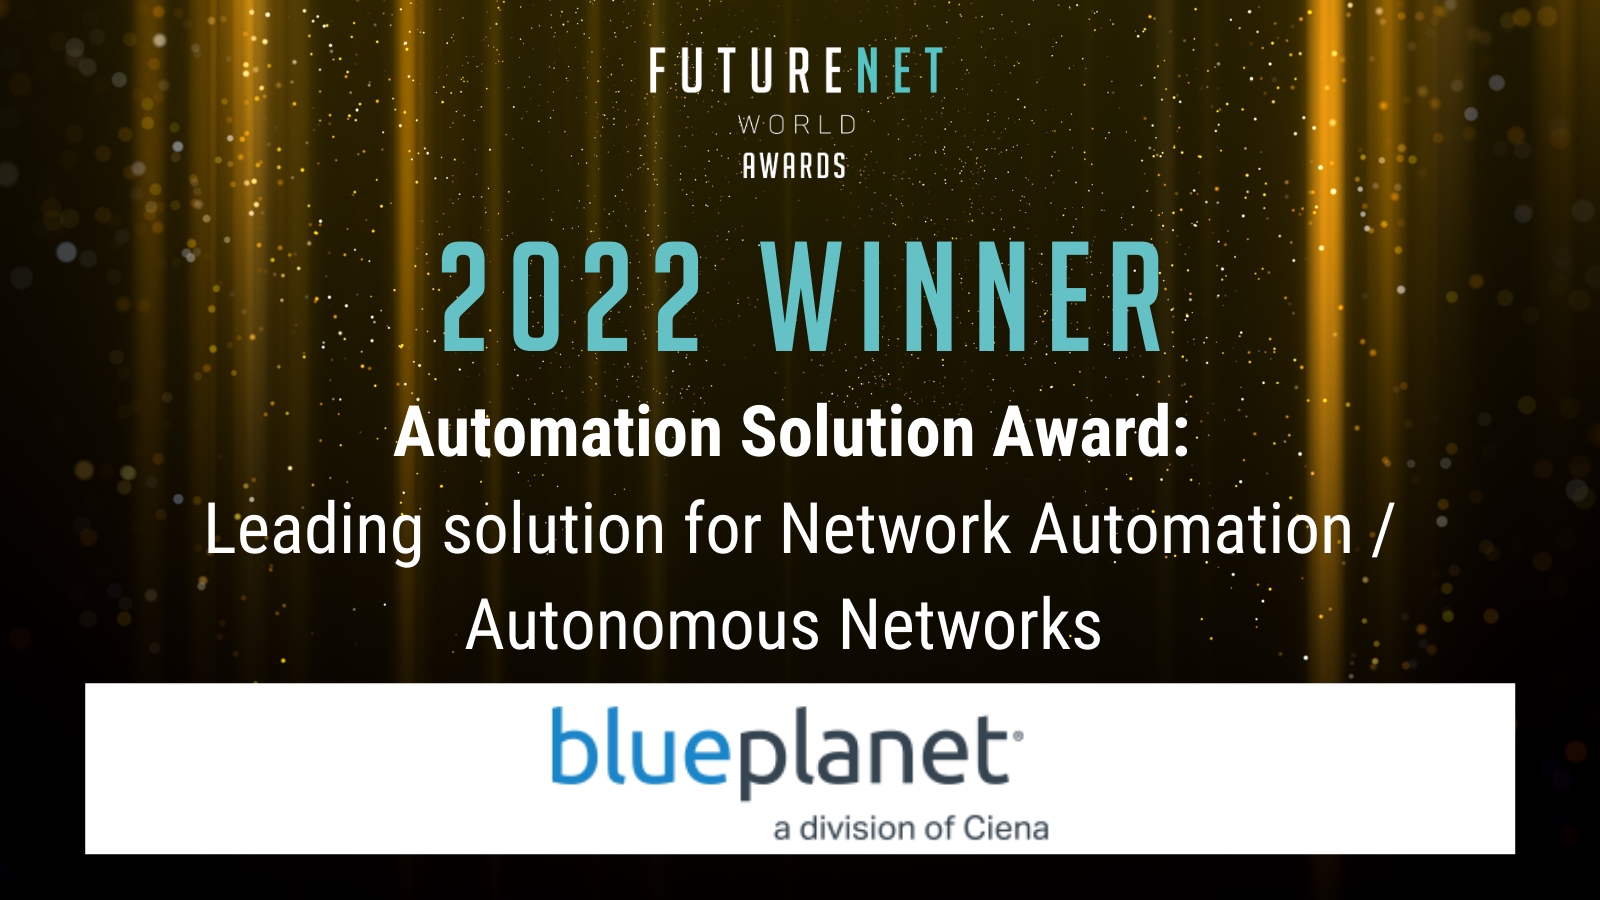 FutureNet World Automation Solution Award